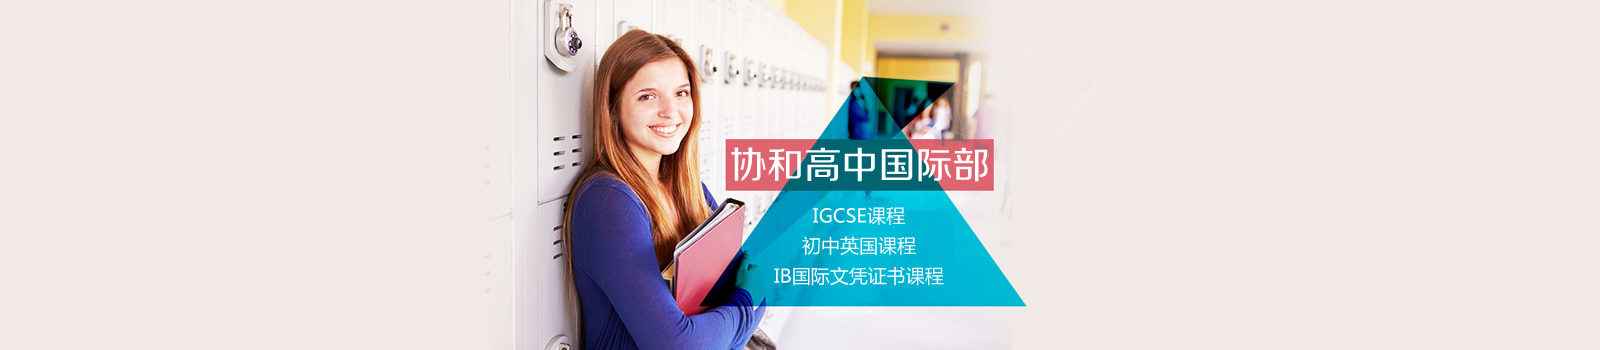 上海协和双语国际教育